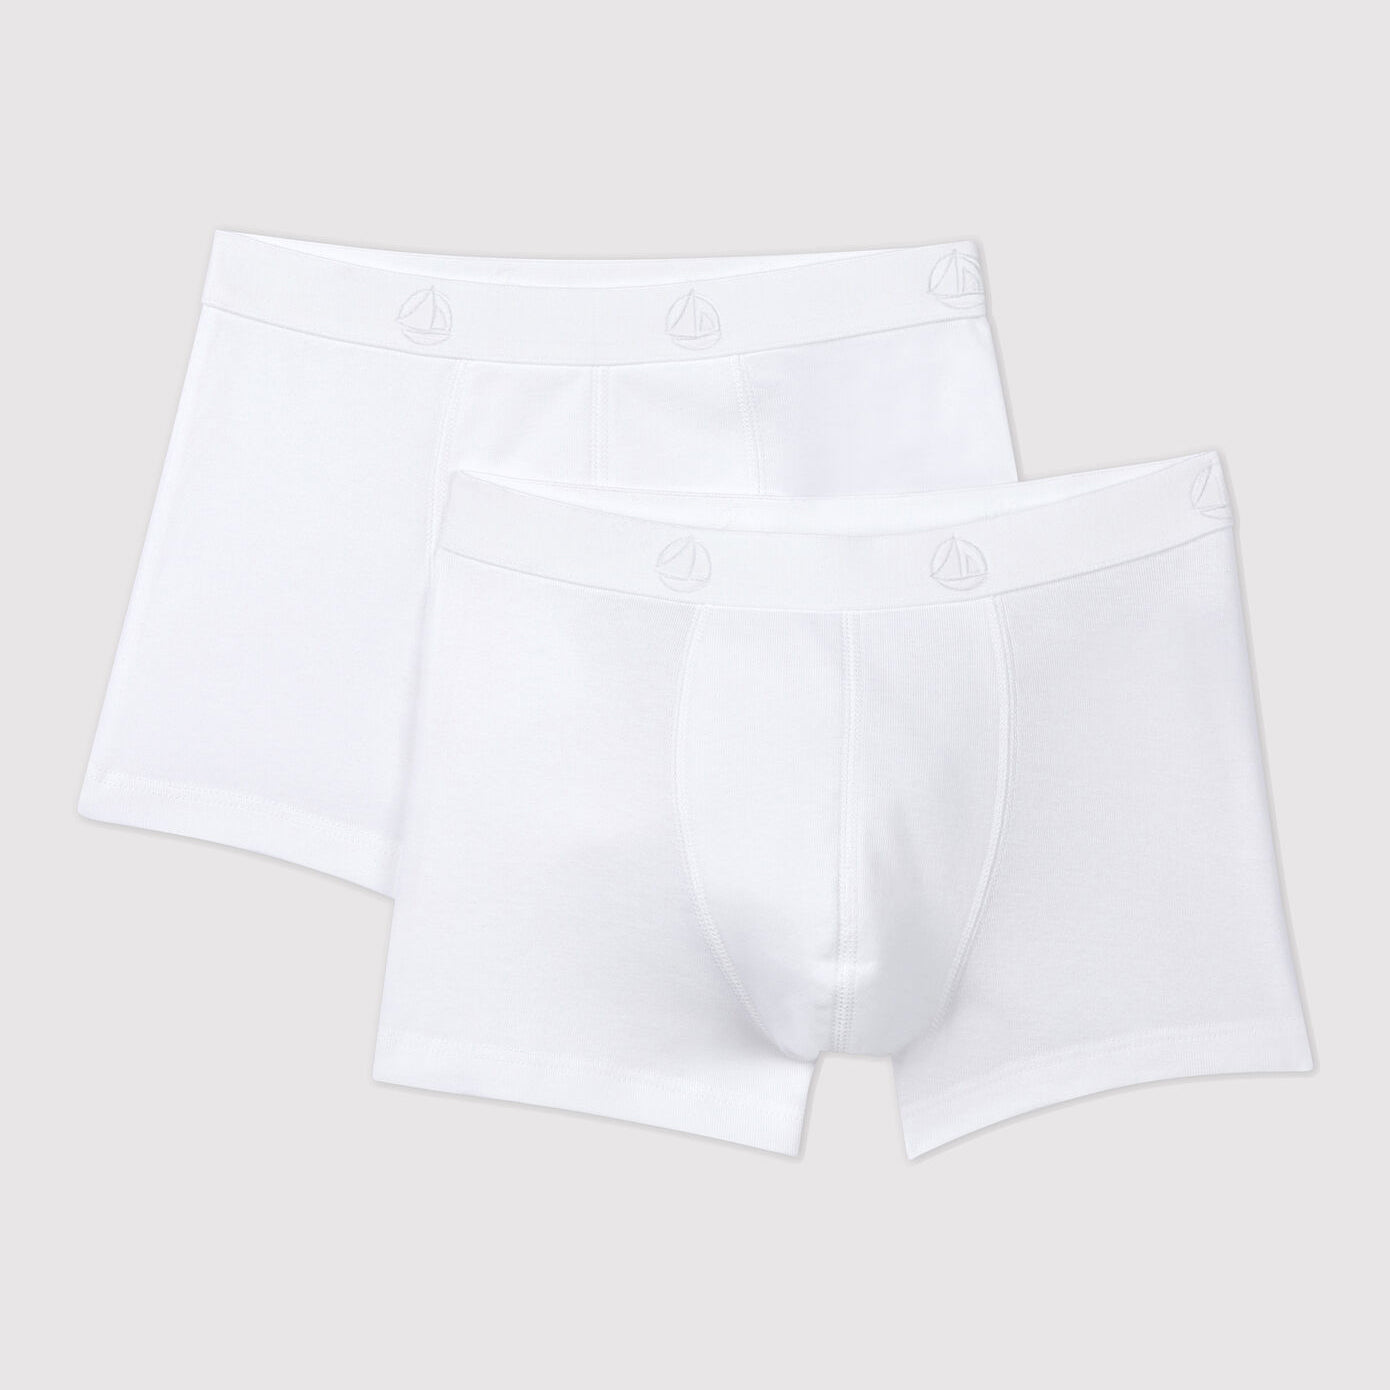 Boys White Cotton Underwear Set(2 Pack)